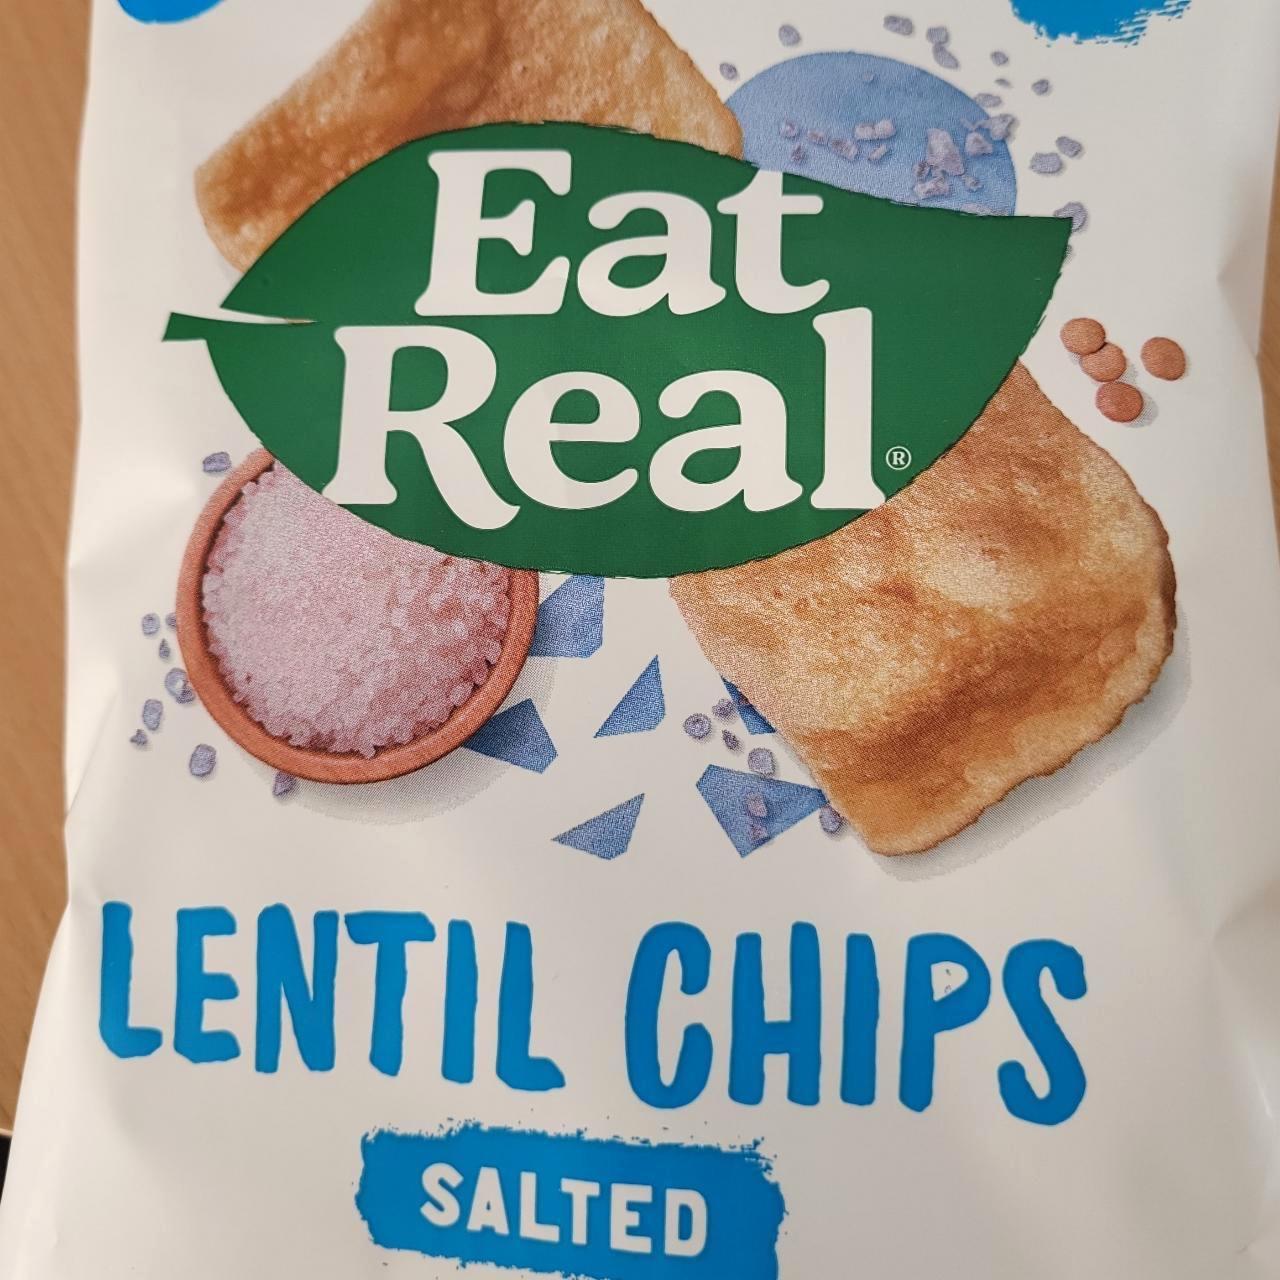 Képek - Lentil chips salted Eat Real